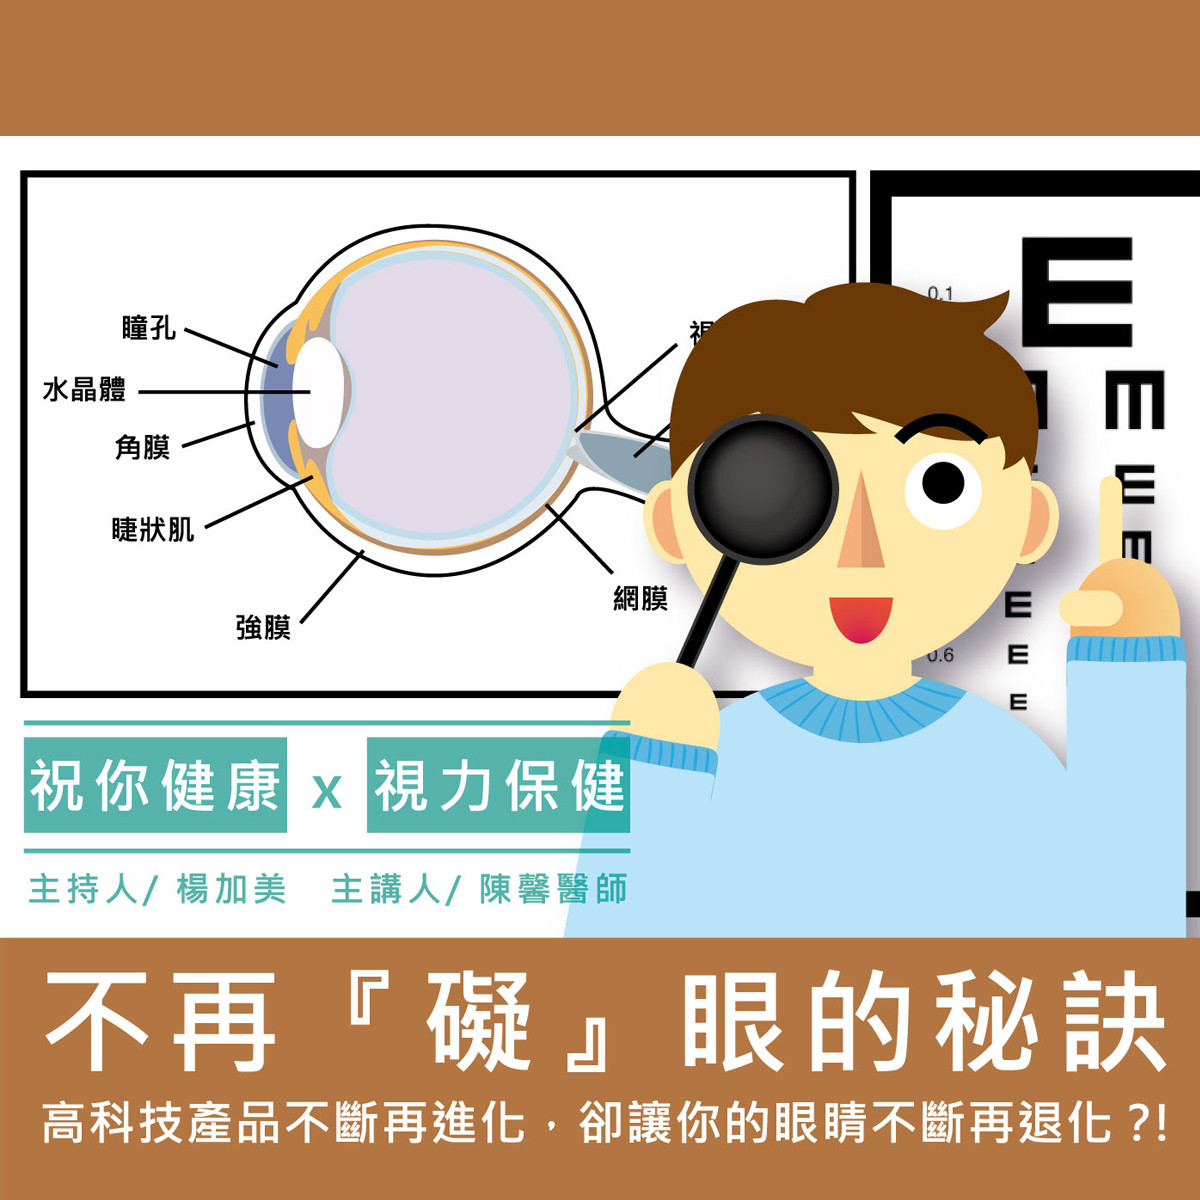 【祝你健康】視力保健 - 10.青光眼封面圖